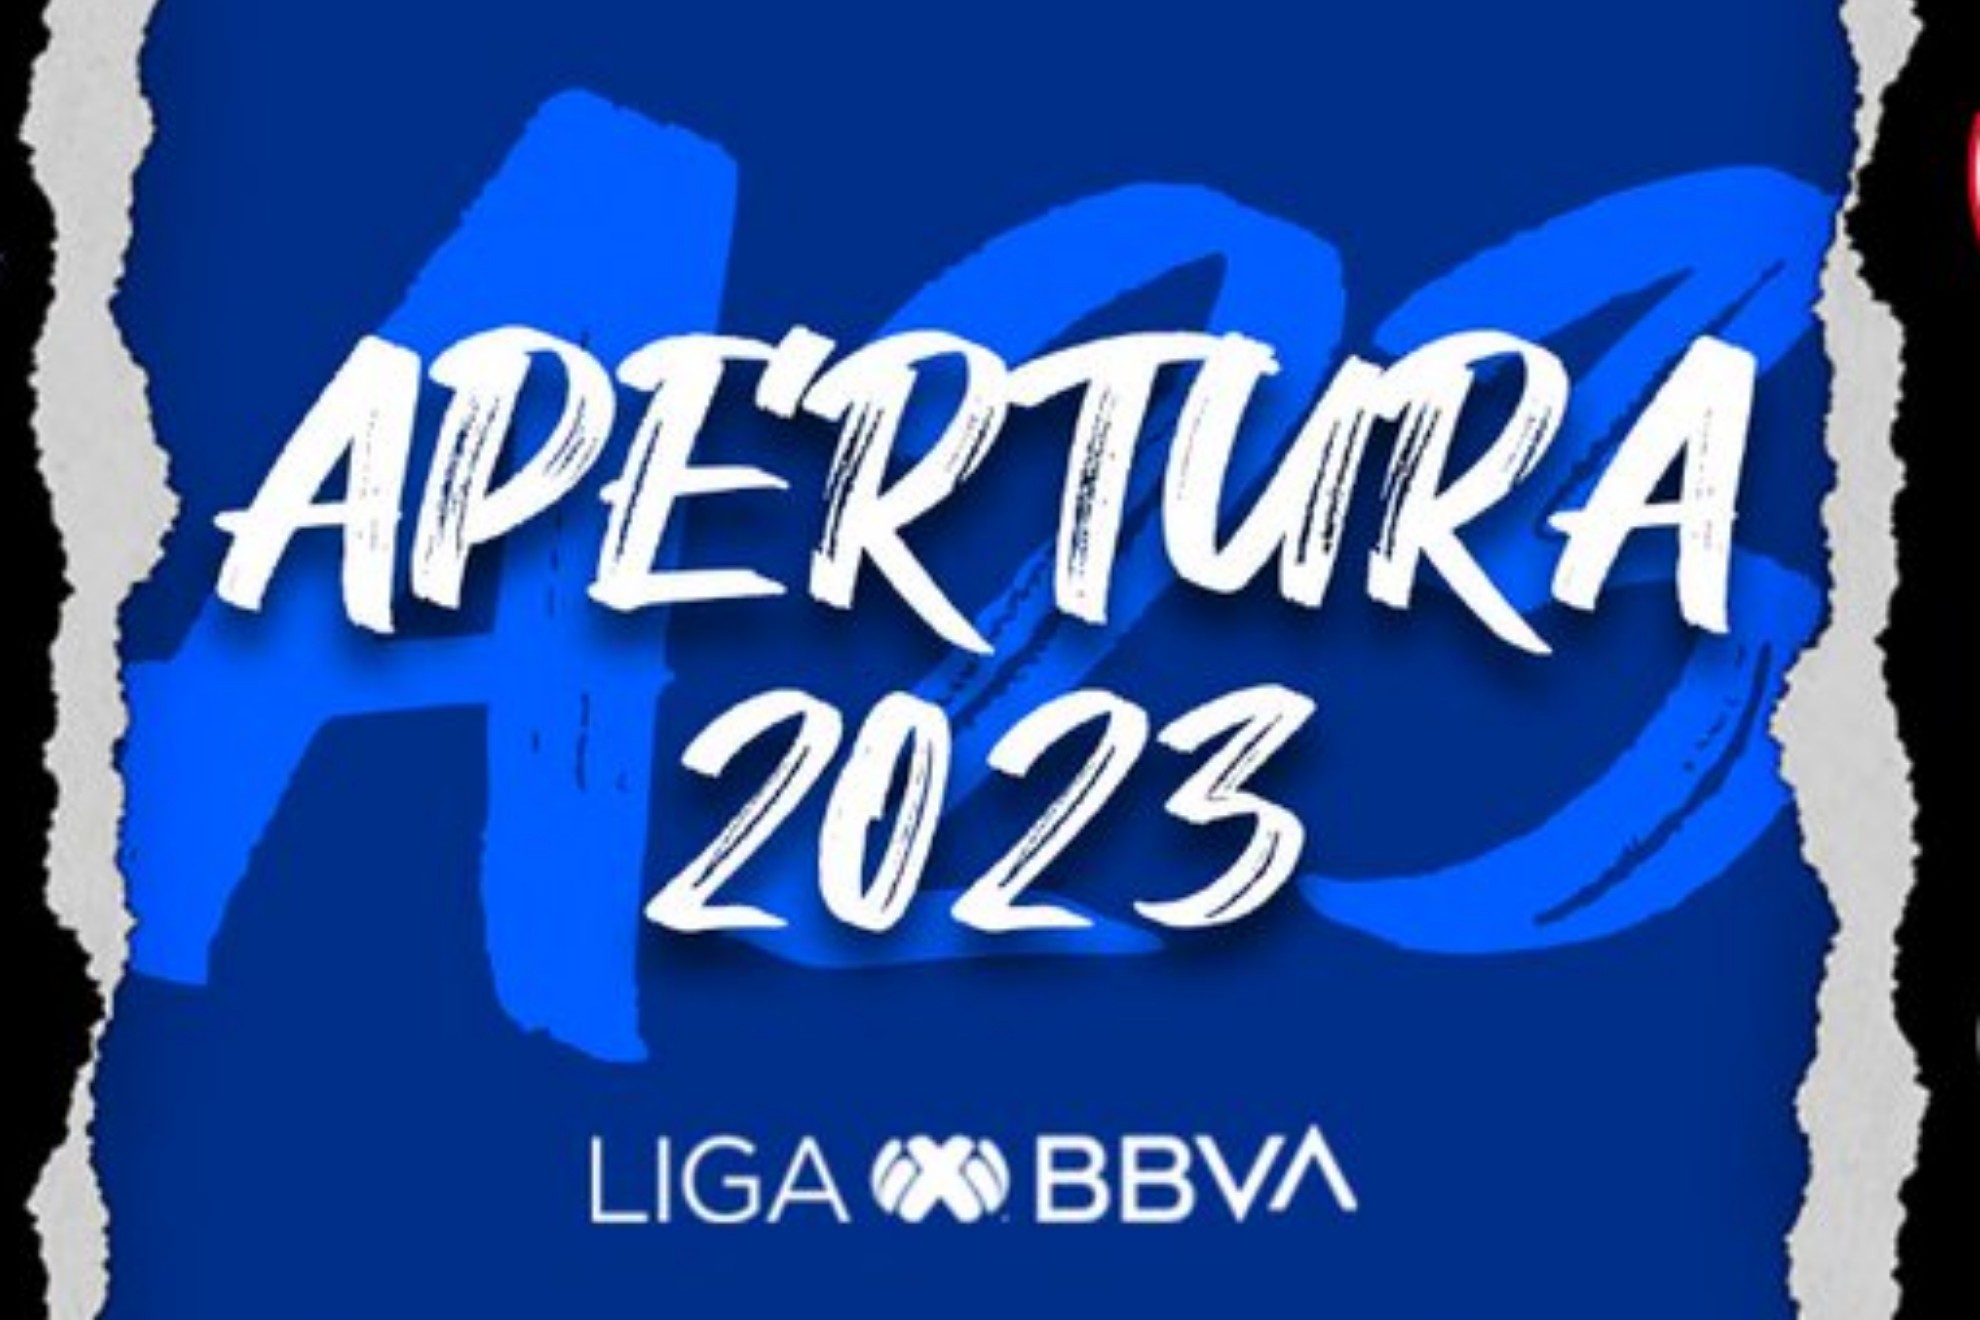 La Guía del Apertura 2022 de la Liga MX: equipos, formato